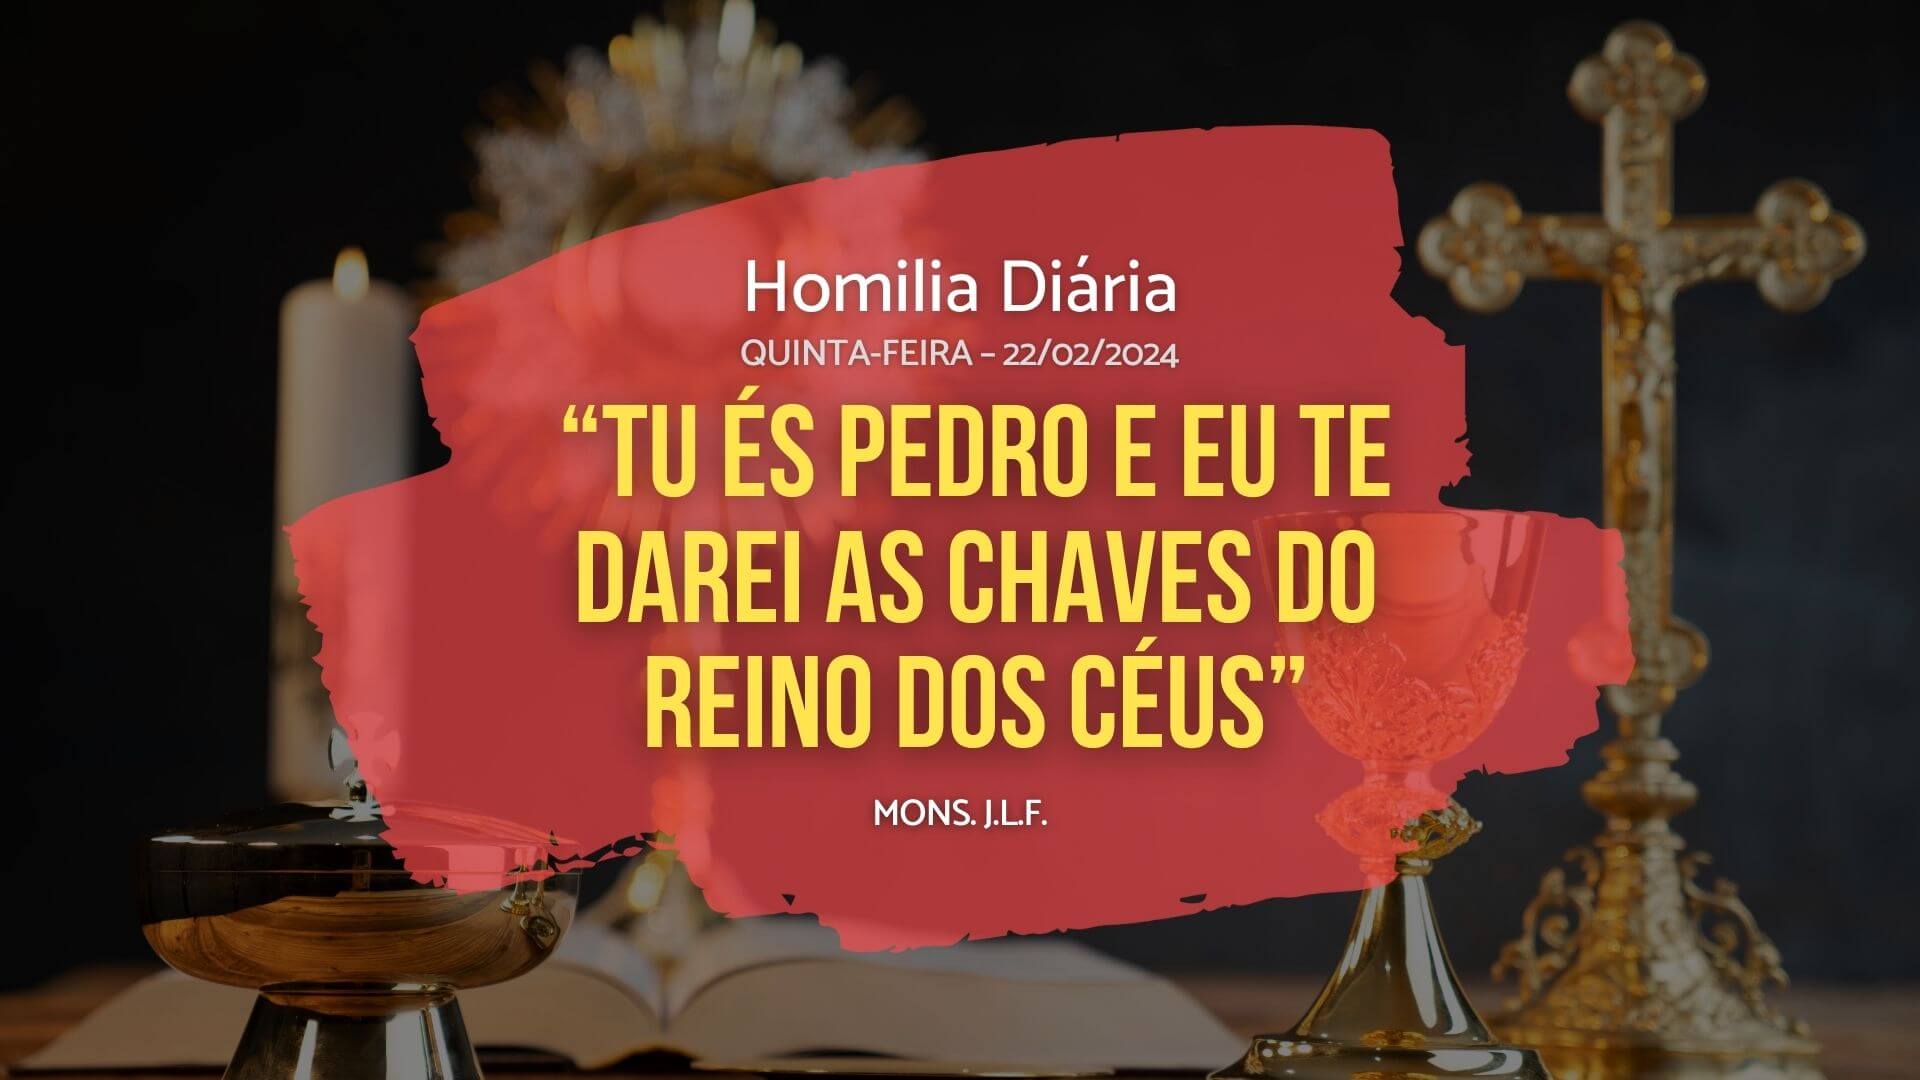 Homilia Diária - Evangelho de hoje - JLF